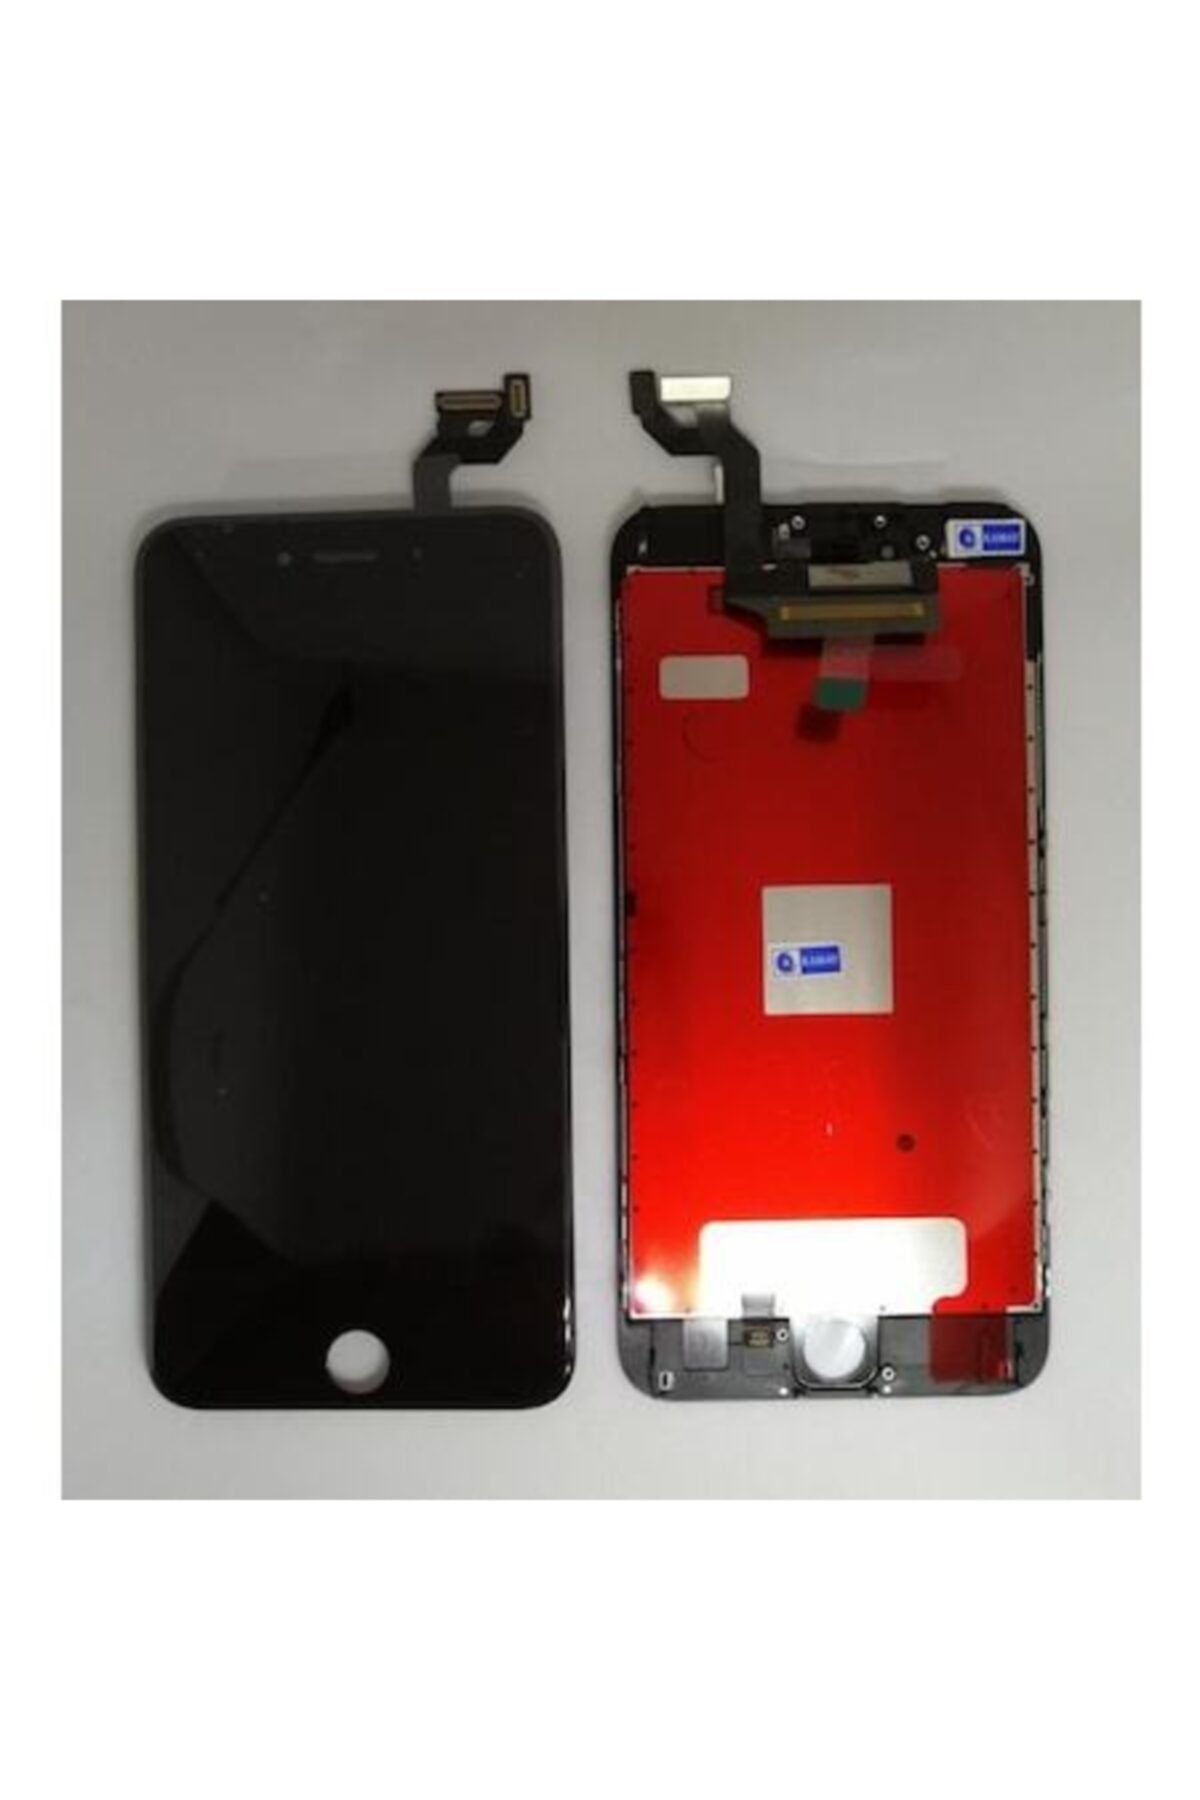 Teknik Gsm Iphone 6s Plus Uyumlu Tam Revize Lcd Ekran Dokunmatk Siyah